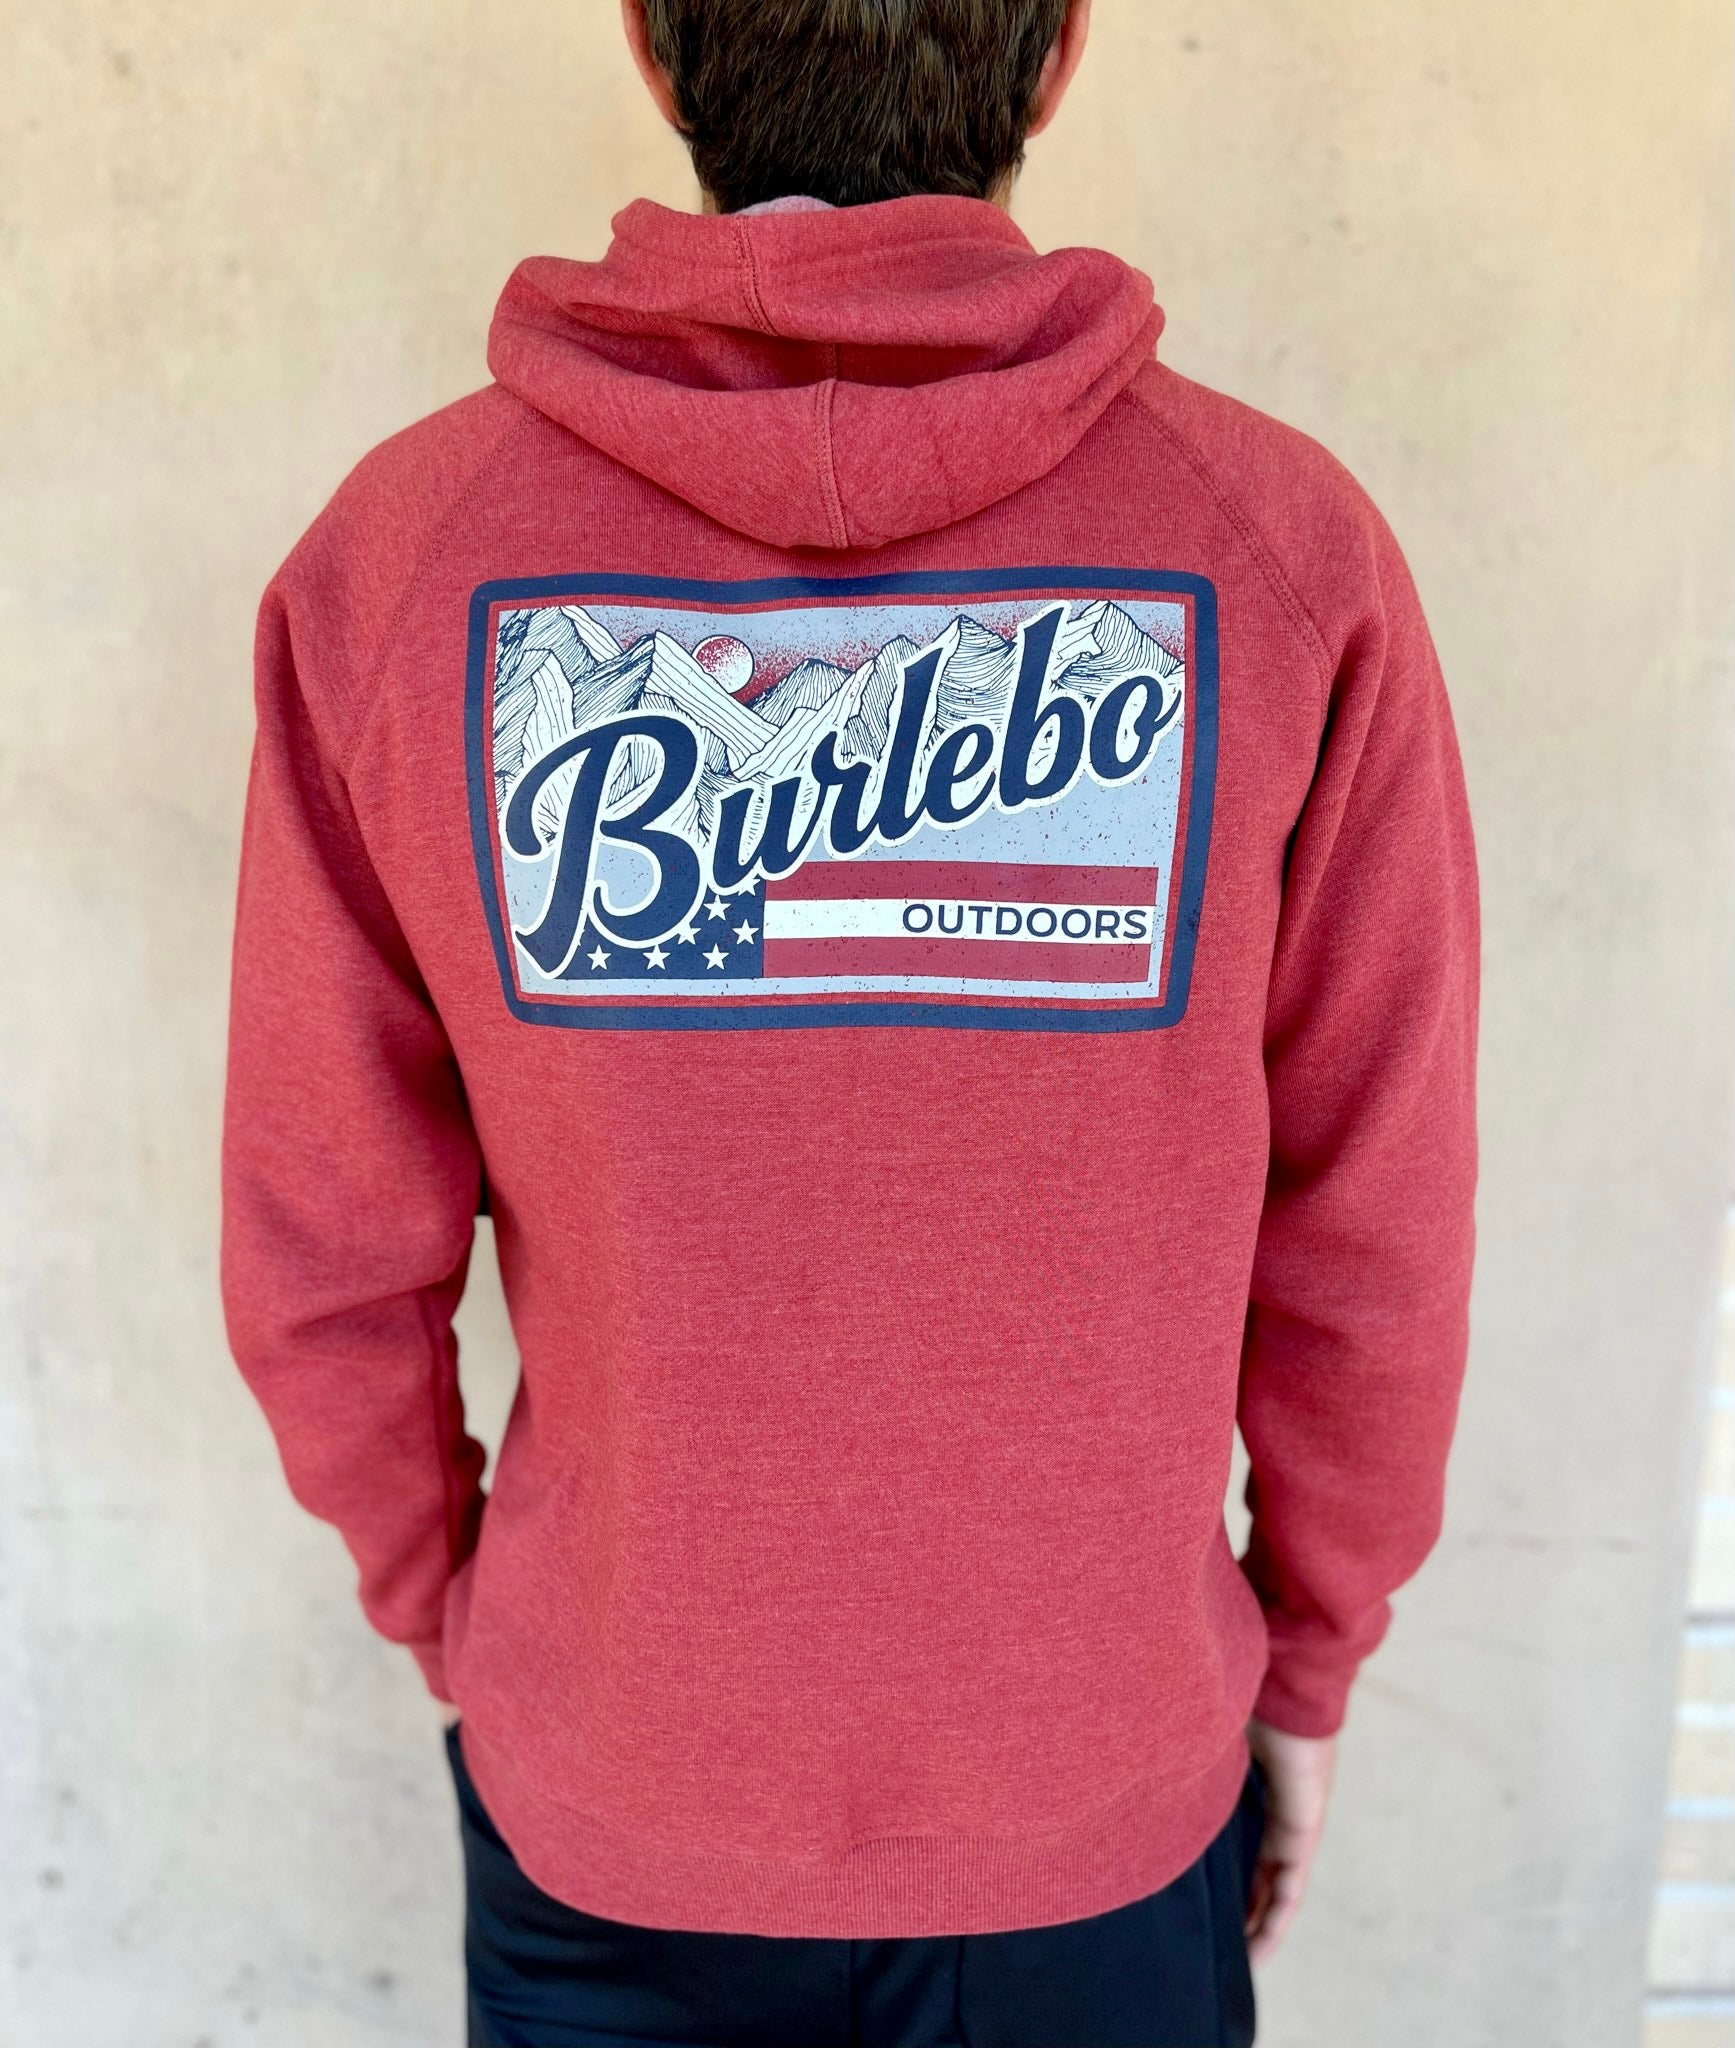 Burlebo’s Fleece Flag Hooded Sweatshirt